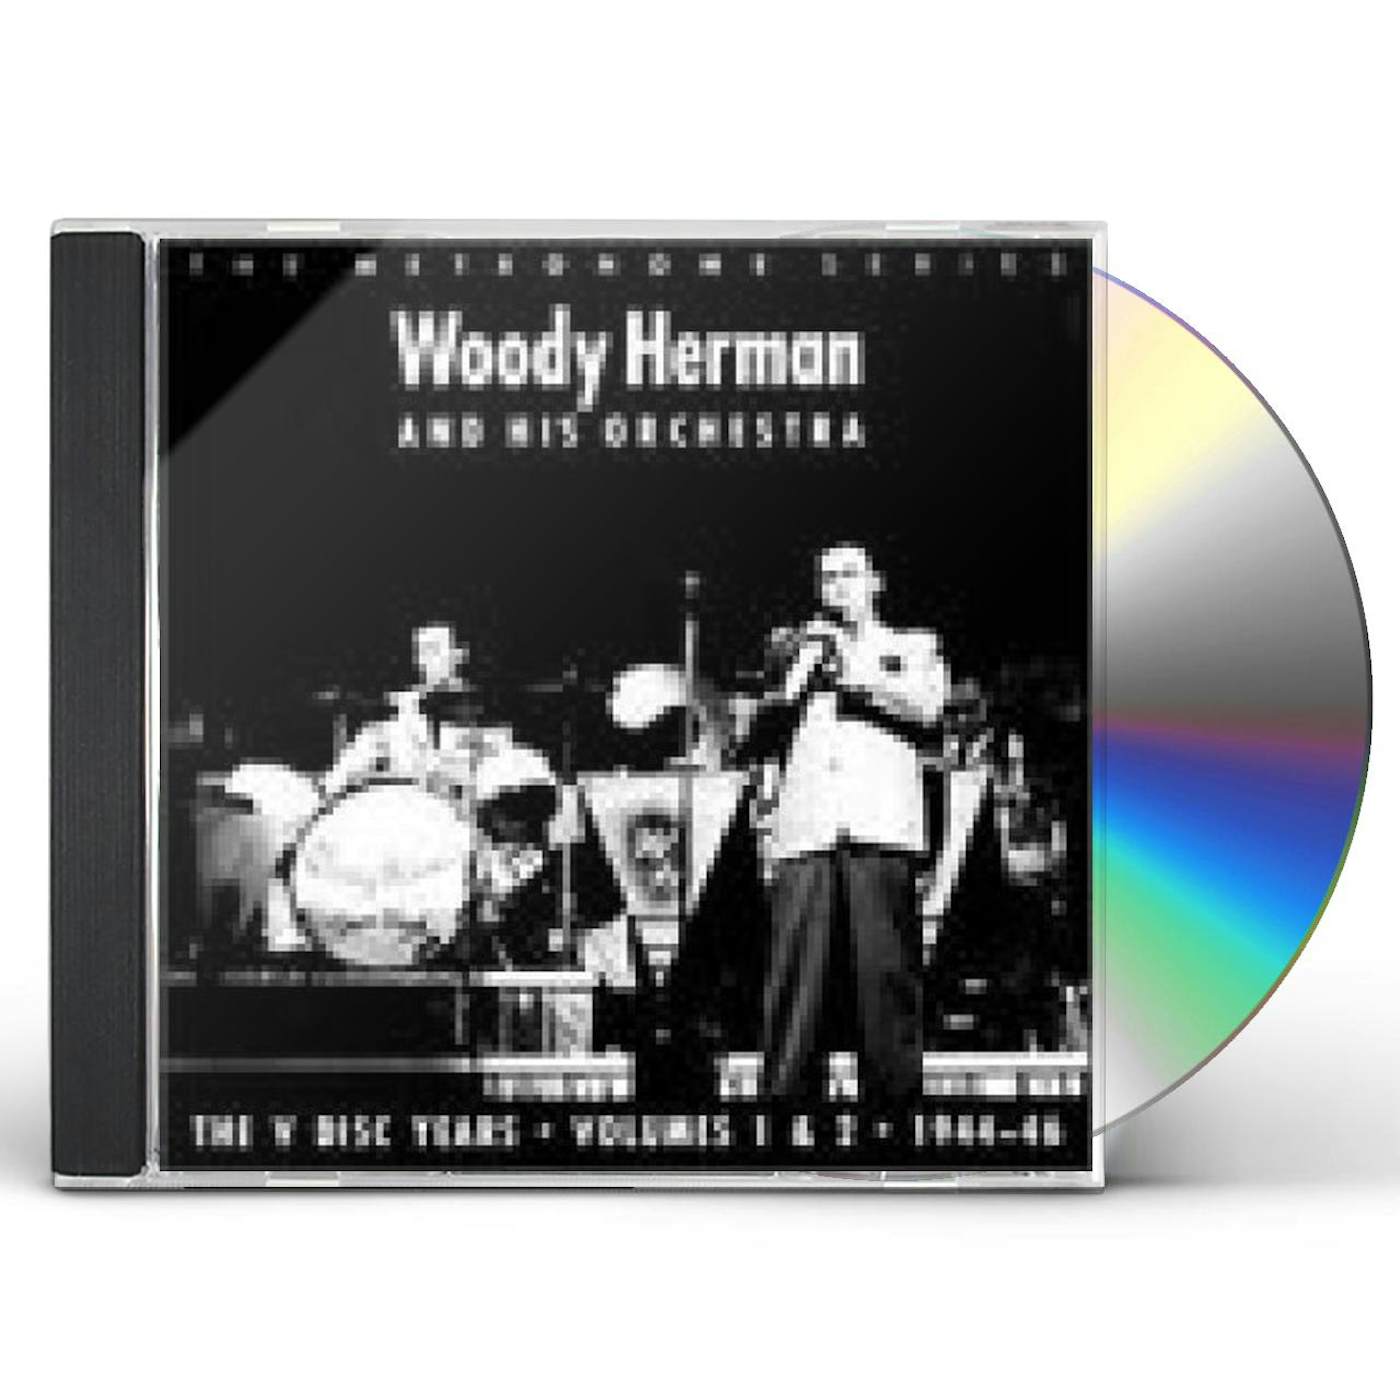 Woody Herman V-DISC YEARS 1 & 2: 1944-46 CD